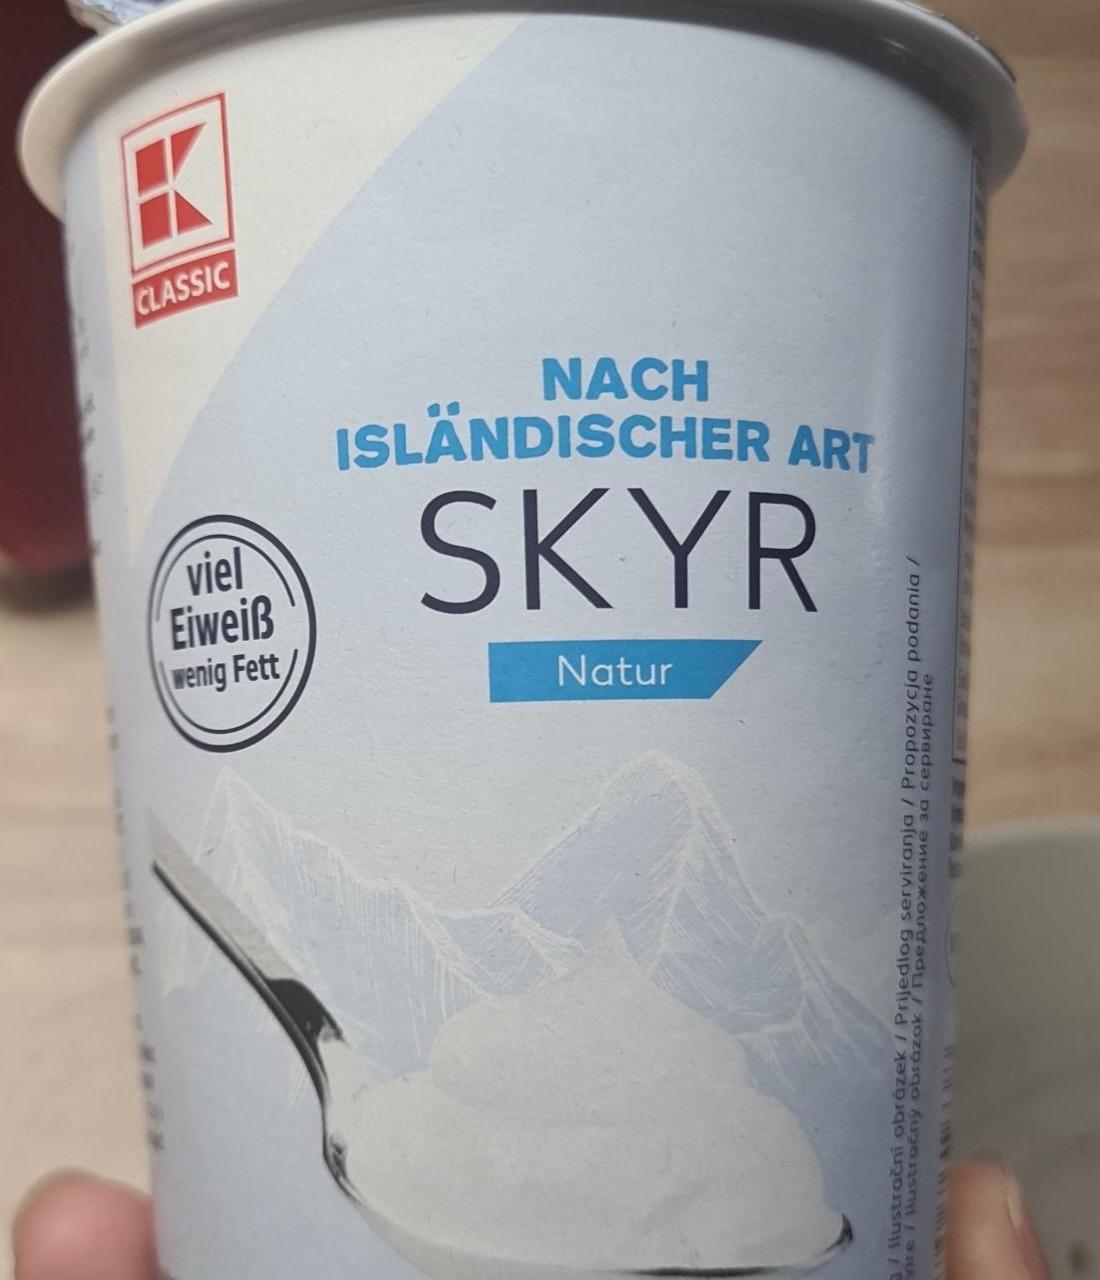 Zdjęcia - Skyr nach Isländischer Art Natur K-Classic